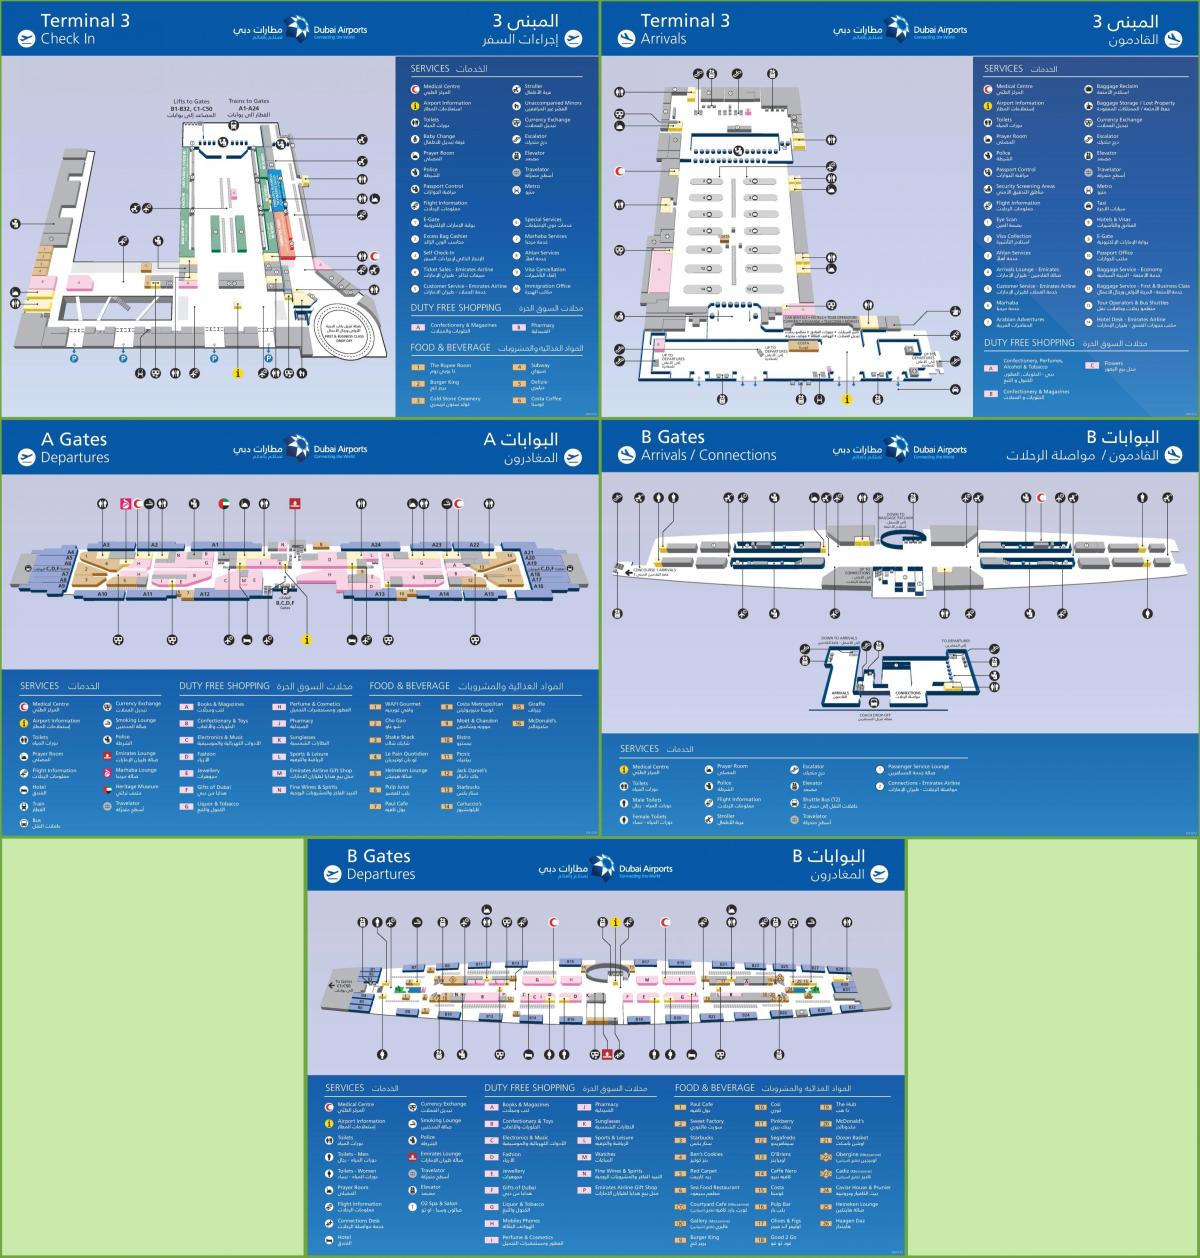 두바이 국제 공항 터미널 3map